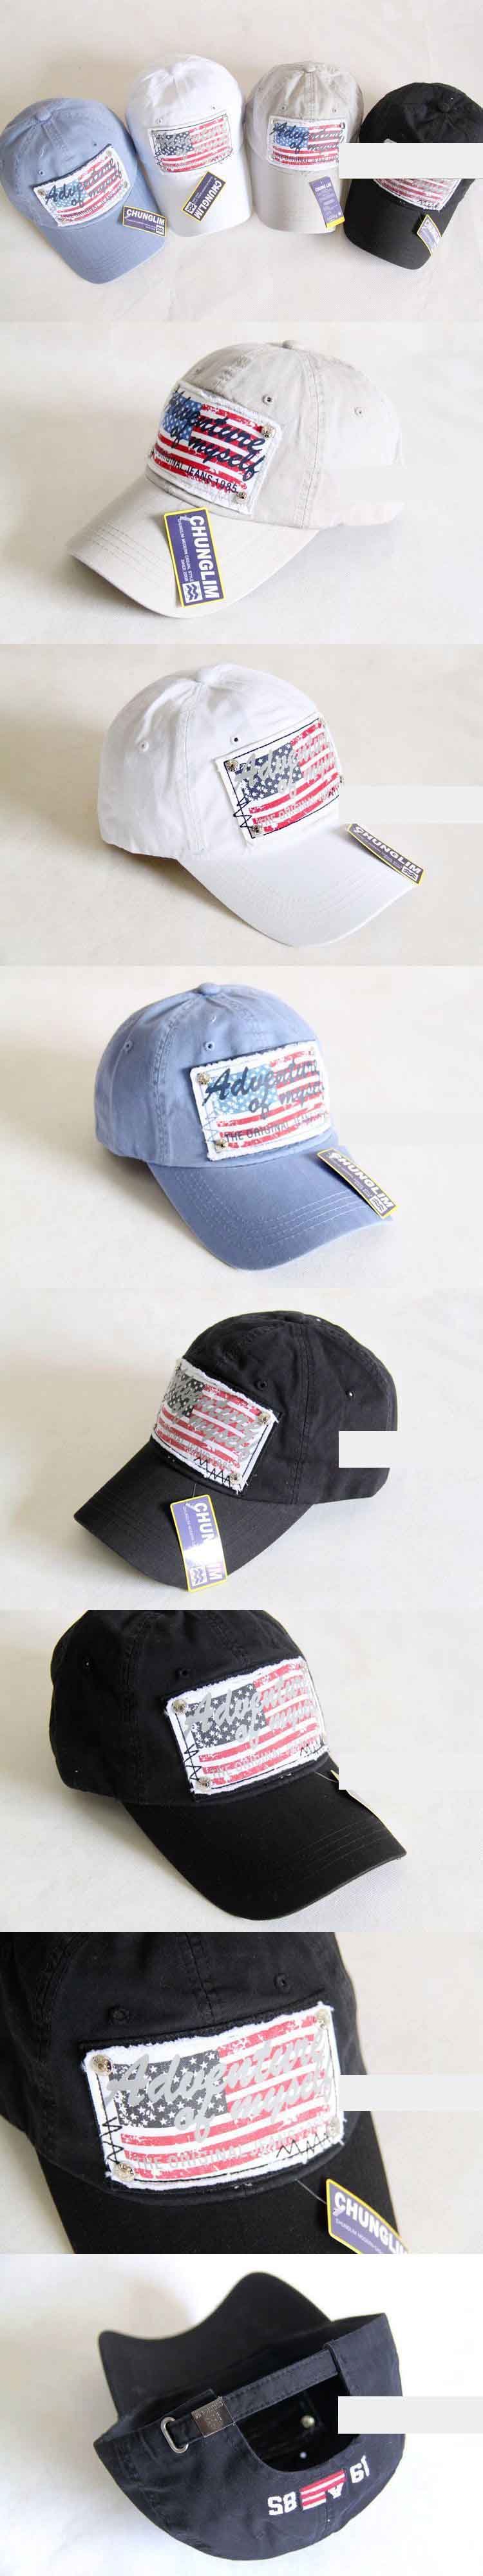 ingin keren maksimal? temukan koleksi topi keren dari pfp store, koleksi terlengkap dengan desain yang simple